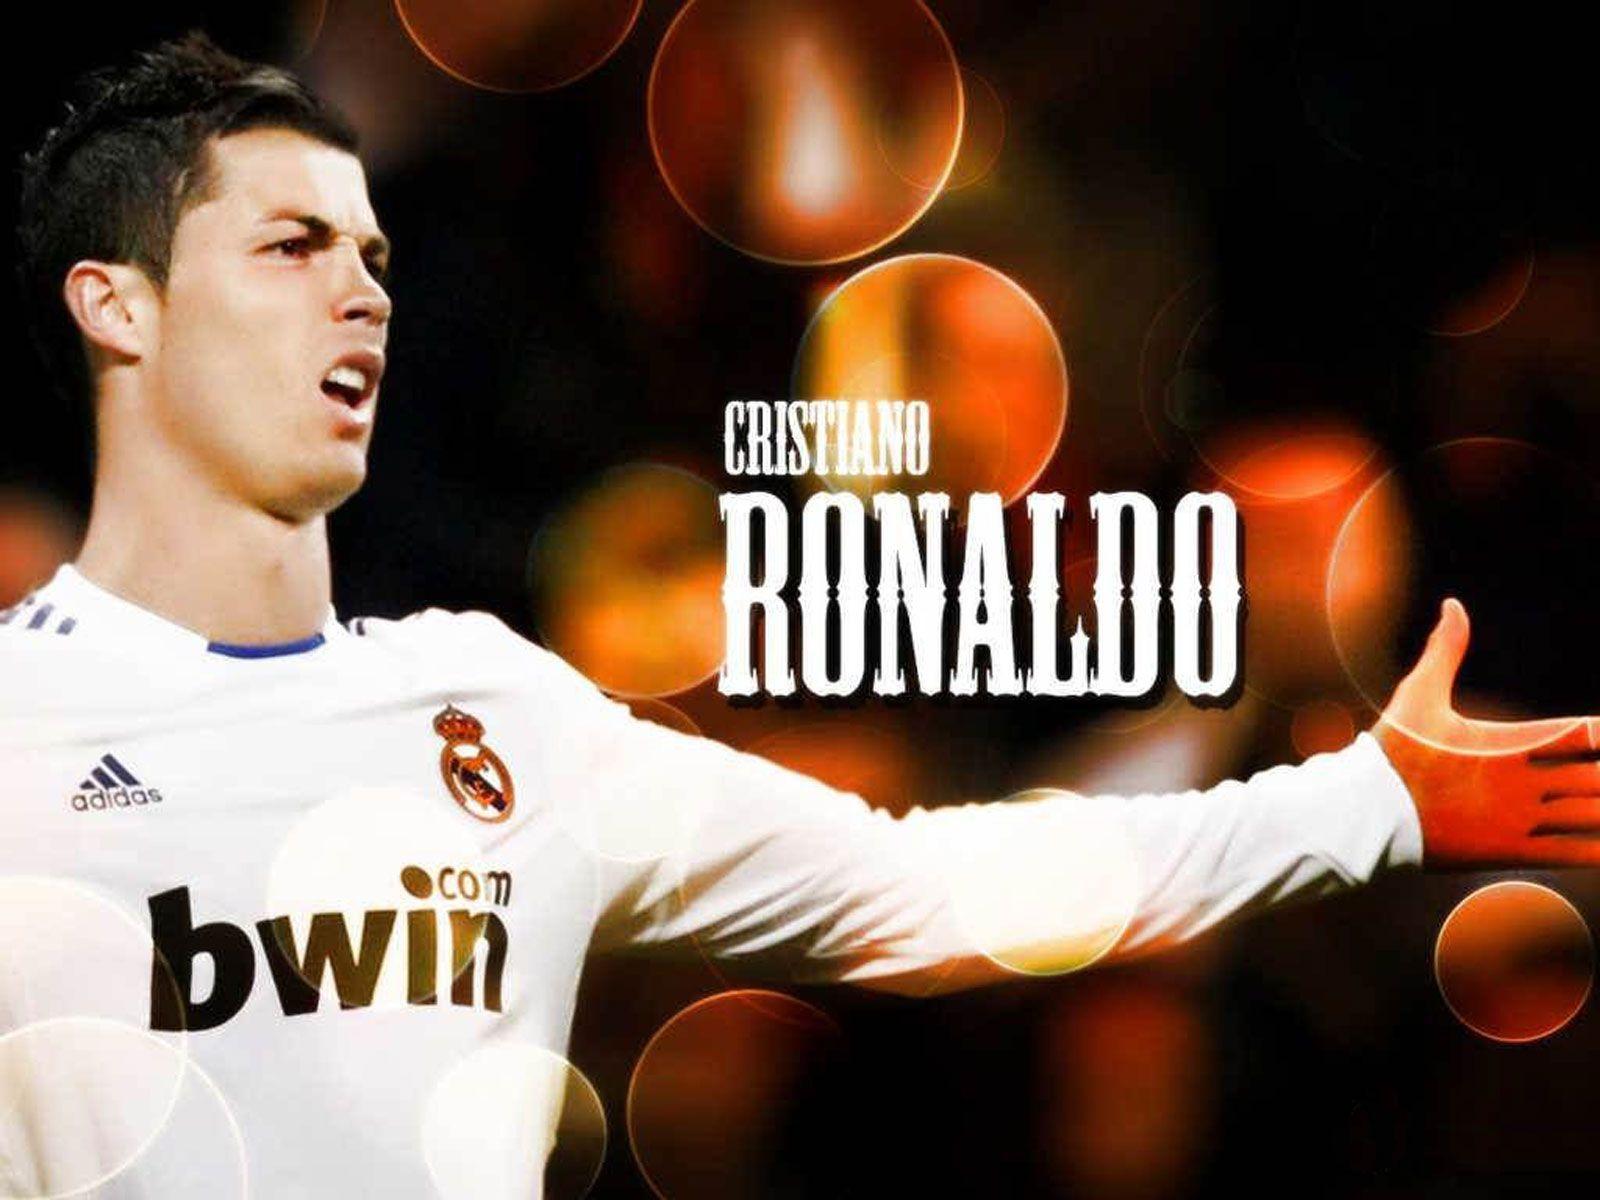 Fonds d&;écran Cristiano Ronaldo Real Madrid, tous les wallpaper